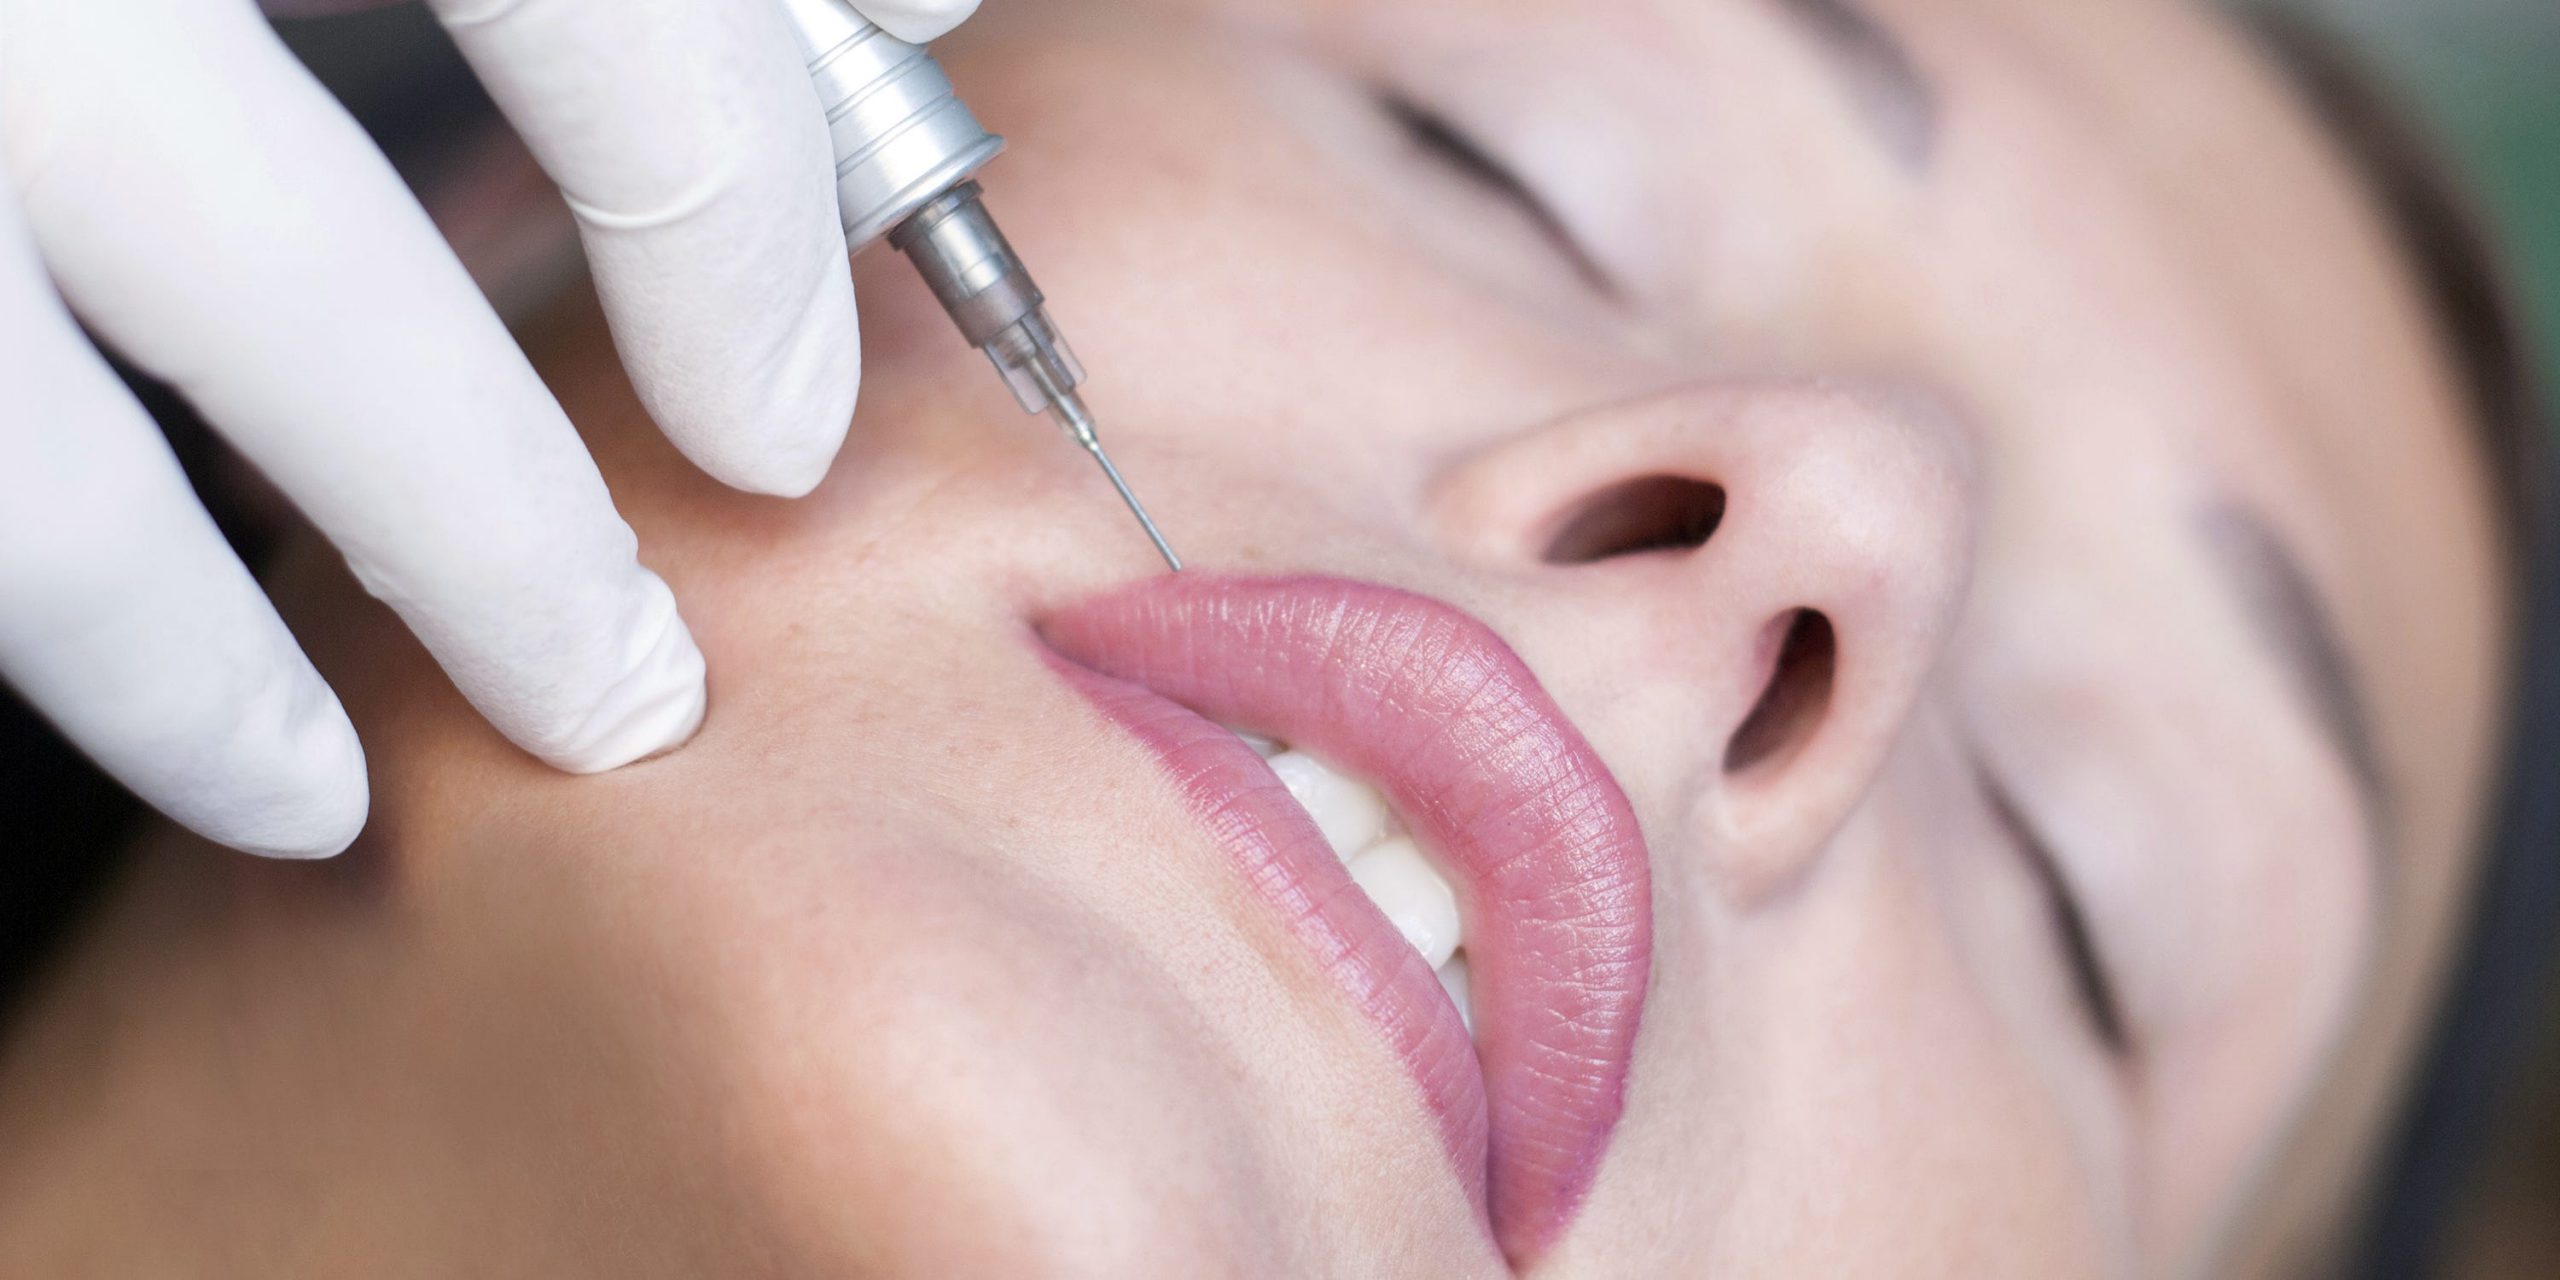 Maquillage semi-permanent des lèvres : de quoi s’agit-il et quels sont les effets de cette procédure?